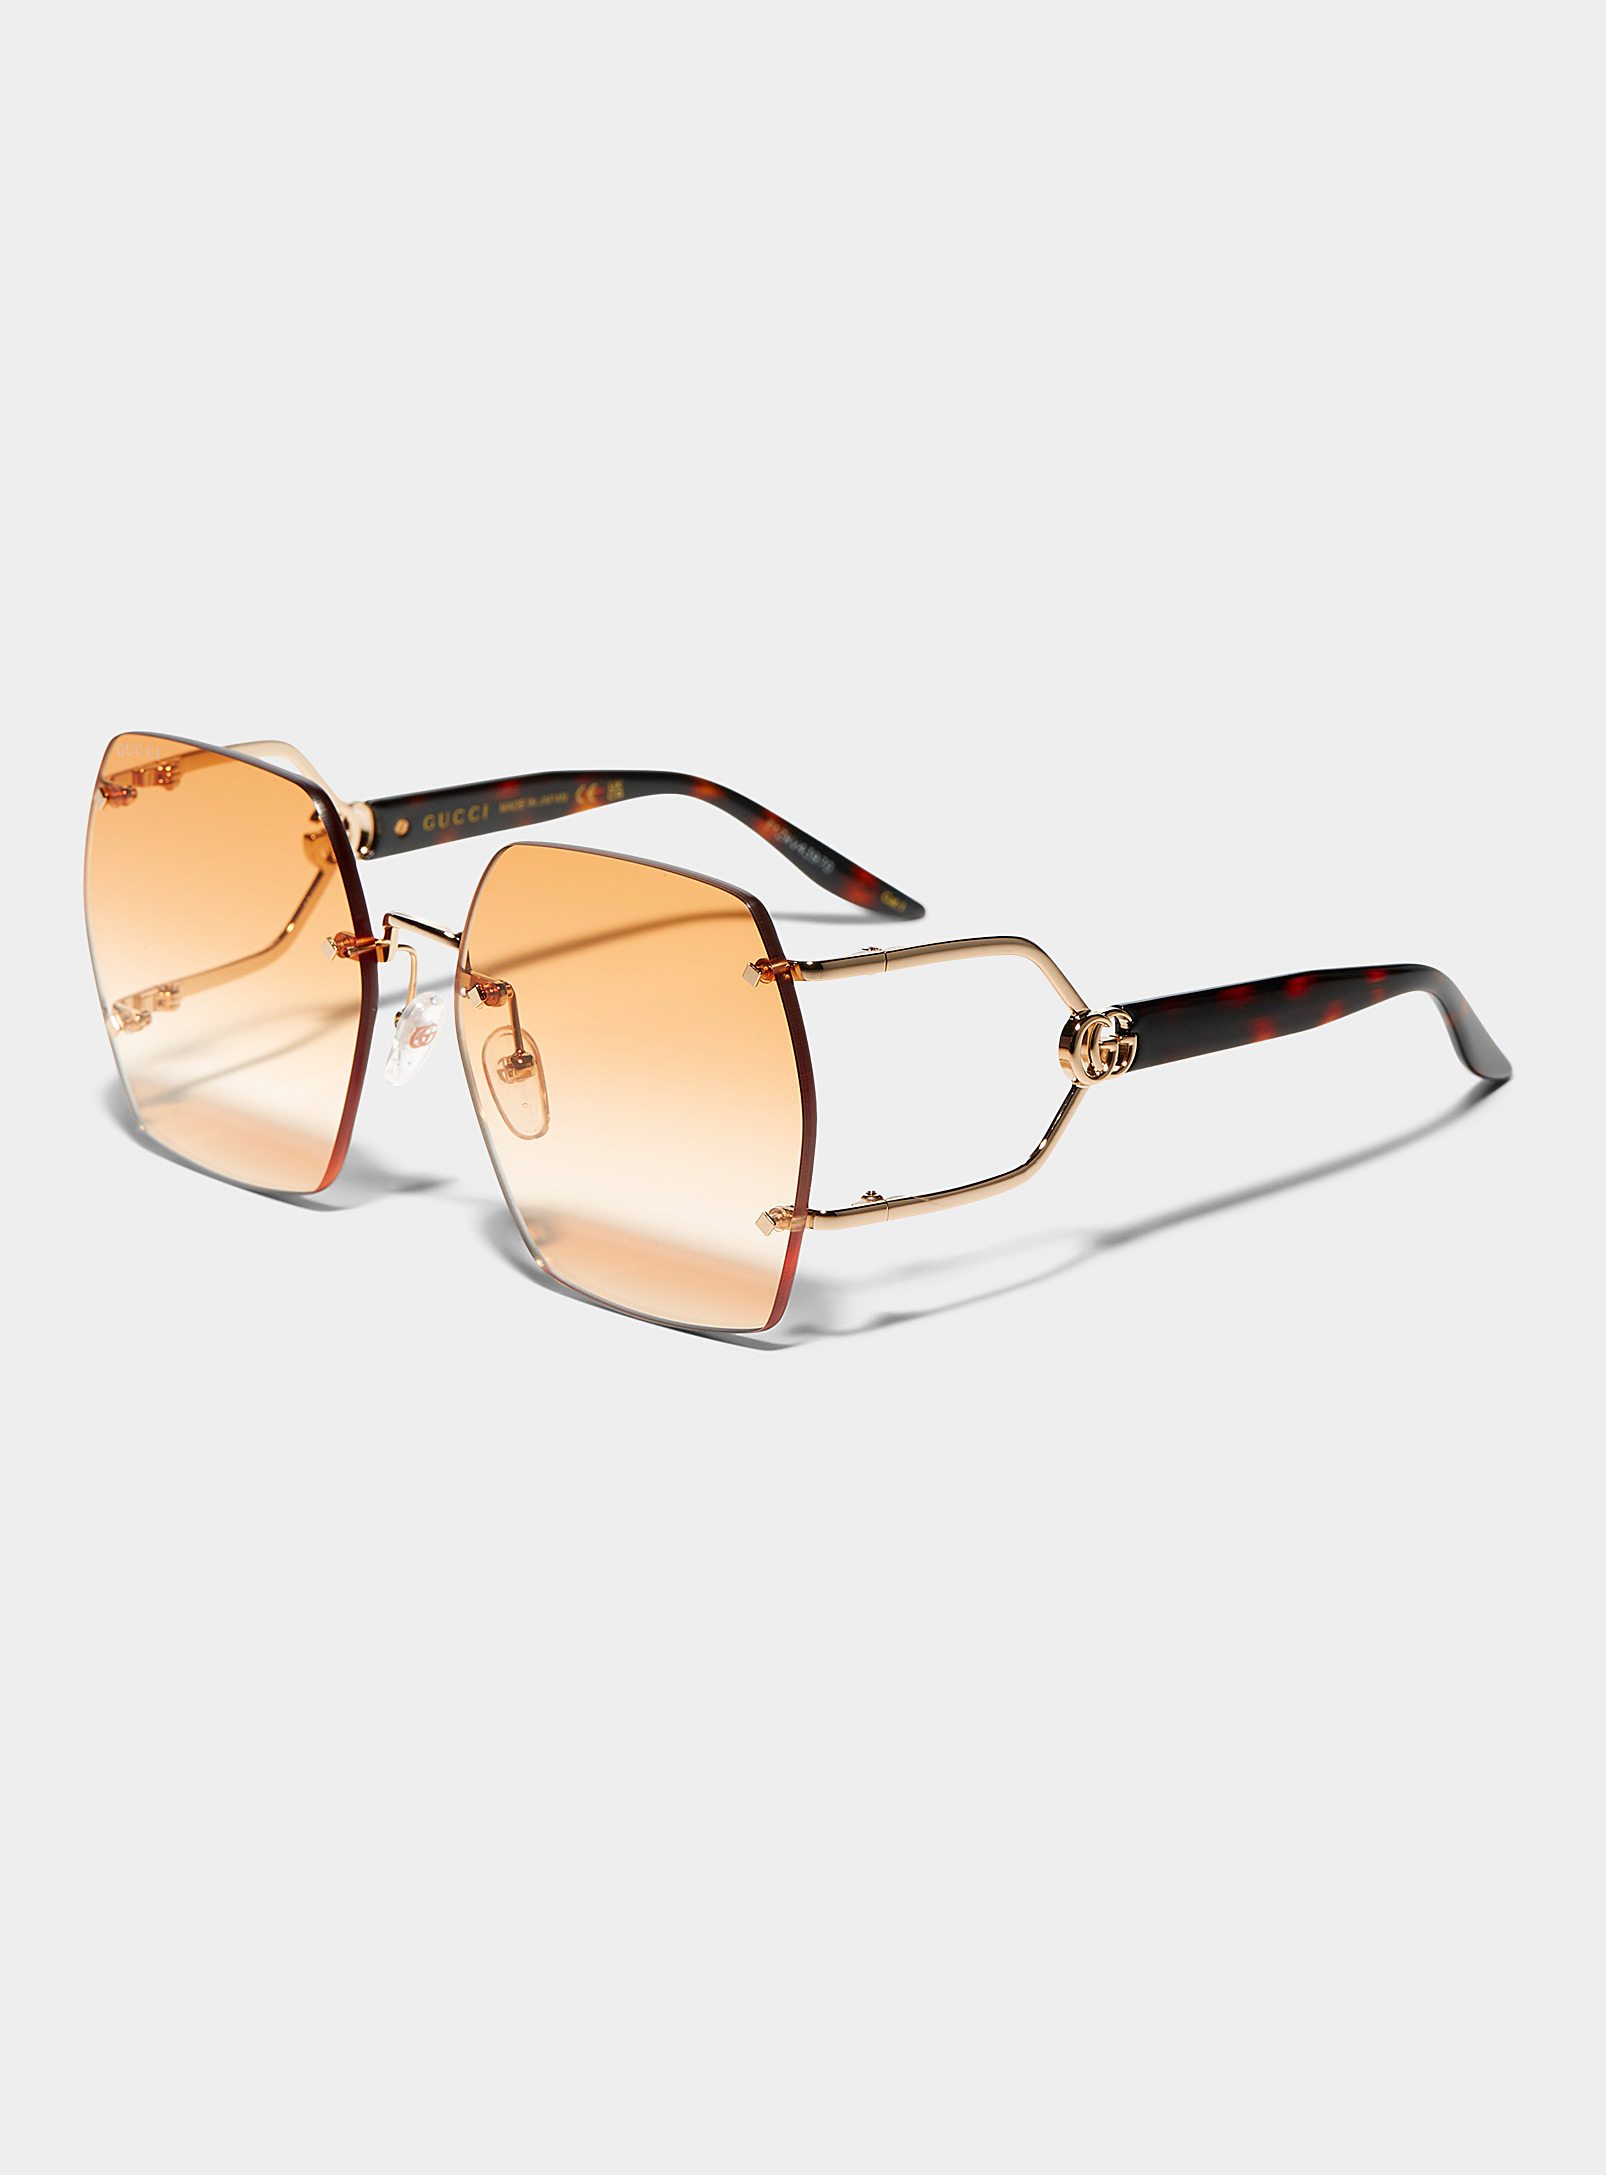 Gucci - Les lunettes de soleil carrées branches divisées